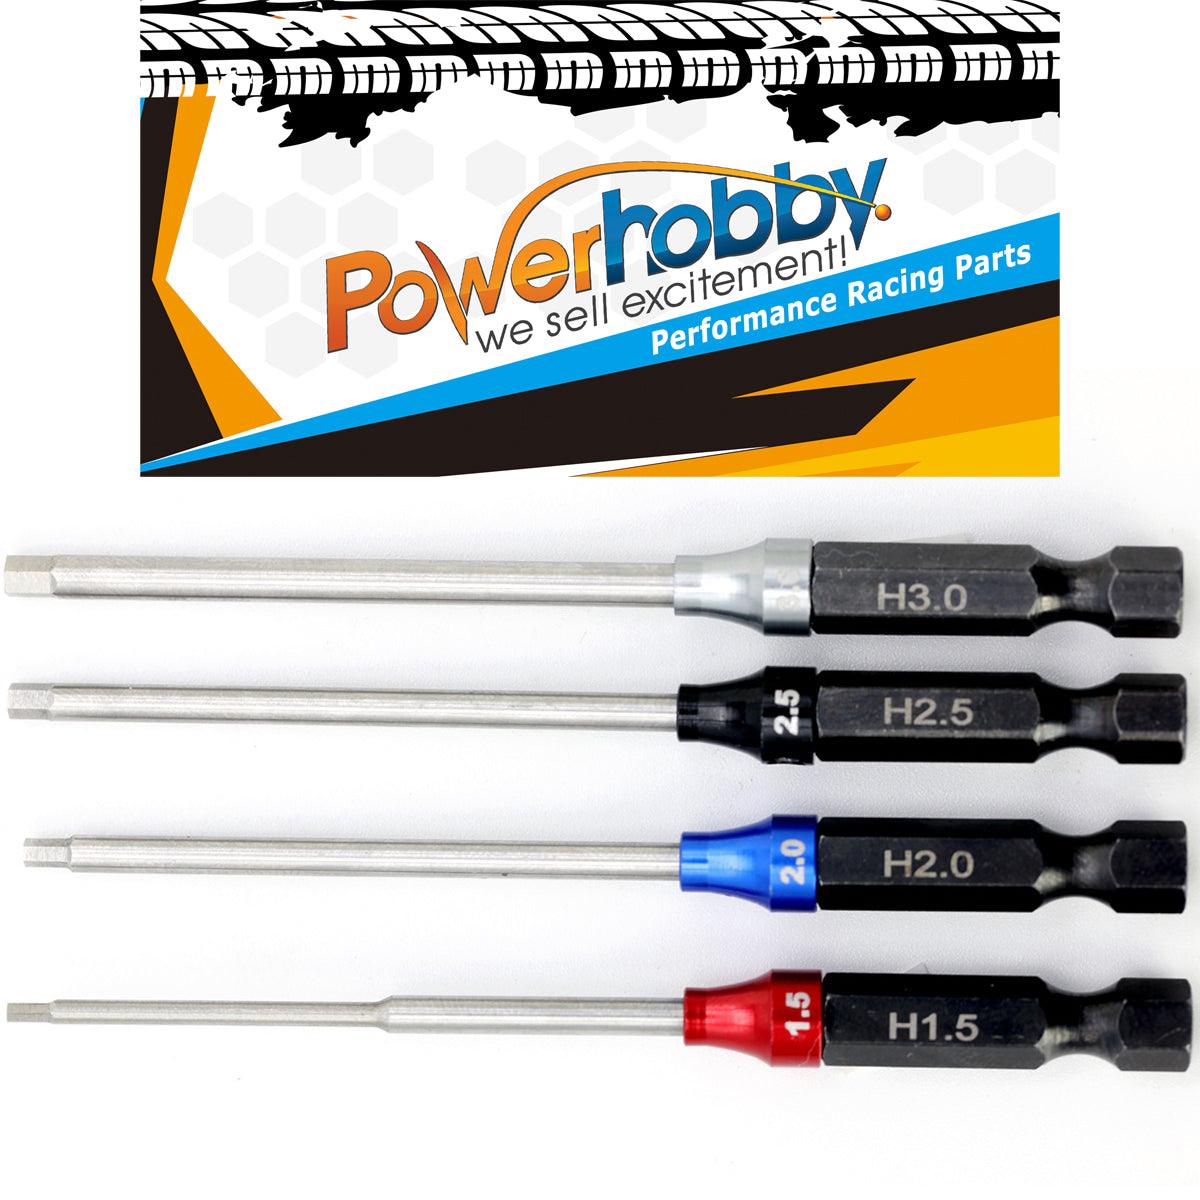 Powerhobby Hex Tip Driver w/Handle 1/4" Tool Set Metric 1.5, 2.0, 2.5, 3.0 mm - PowerHobby